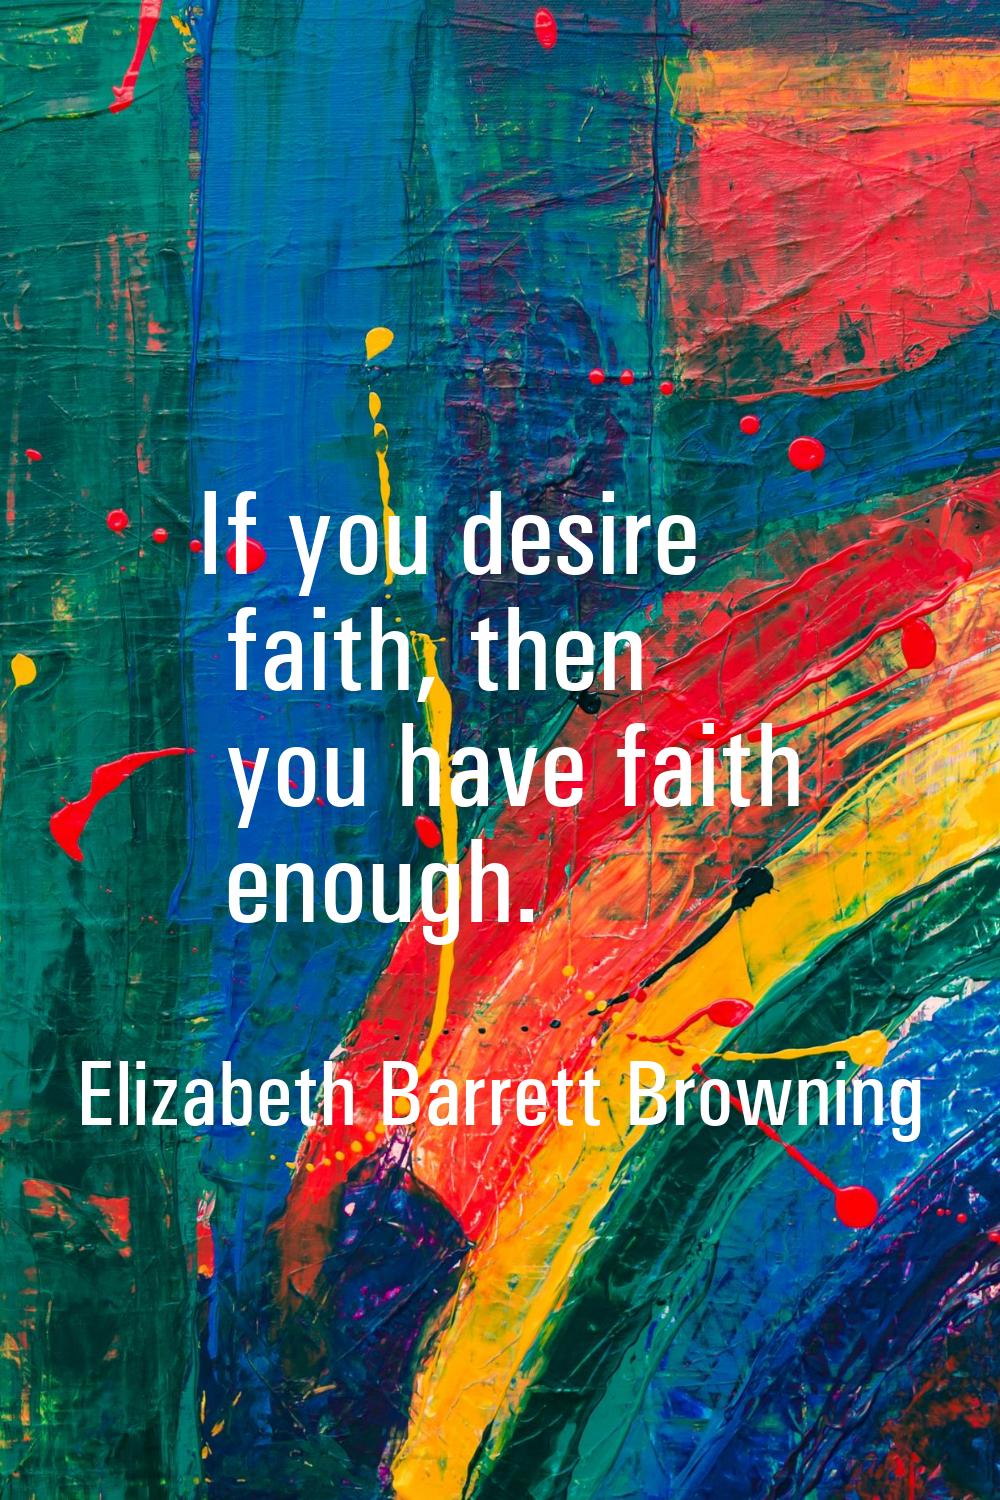 If you desire faith, then you have faith enough.